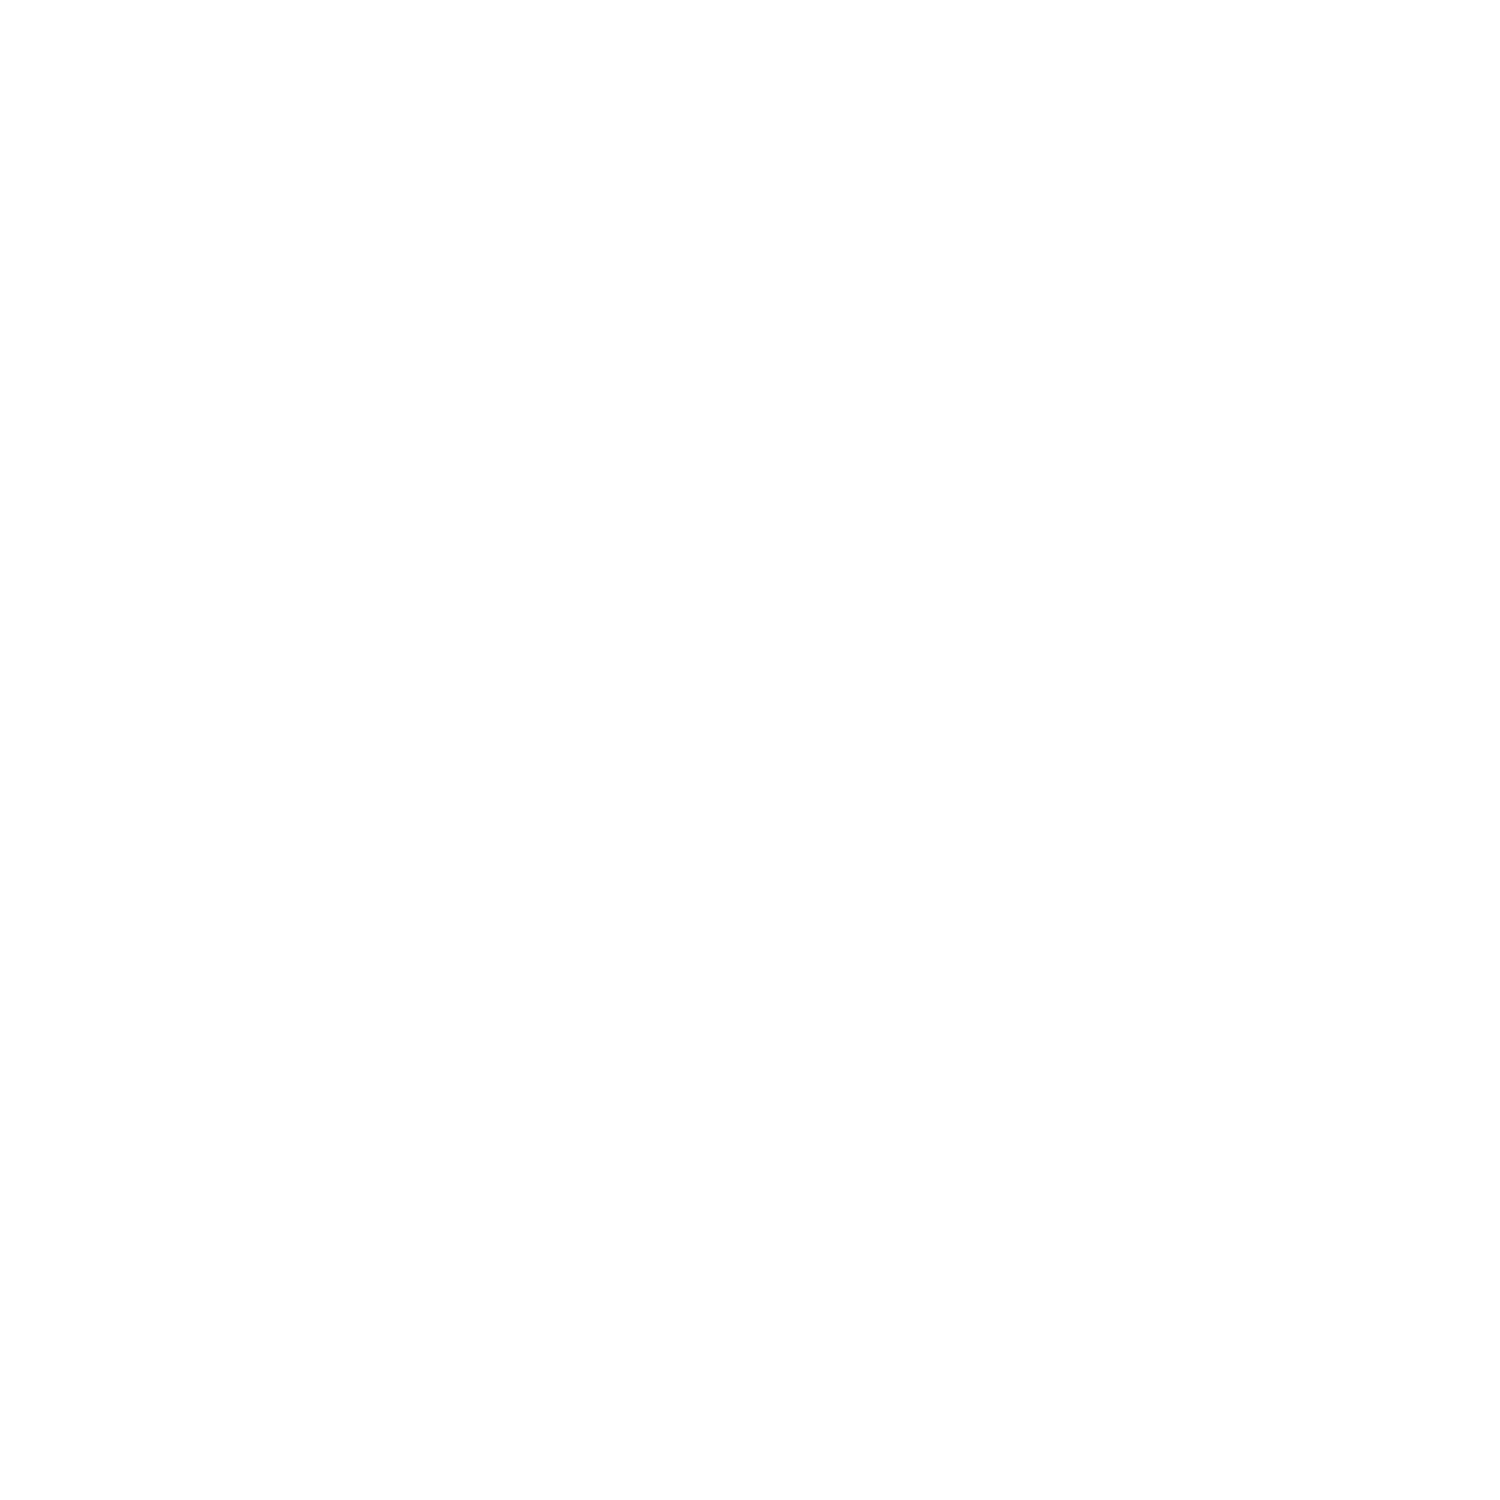 Saxophonique